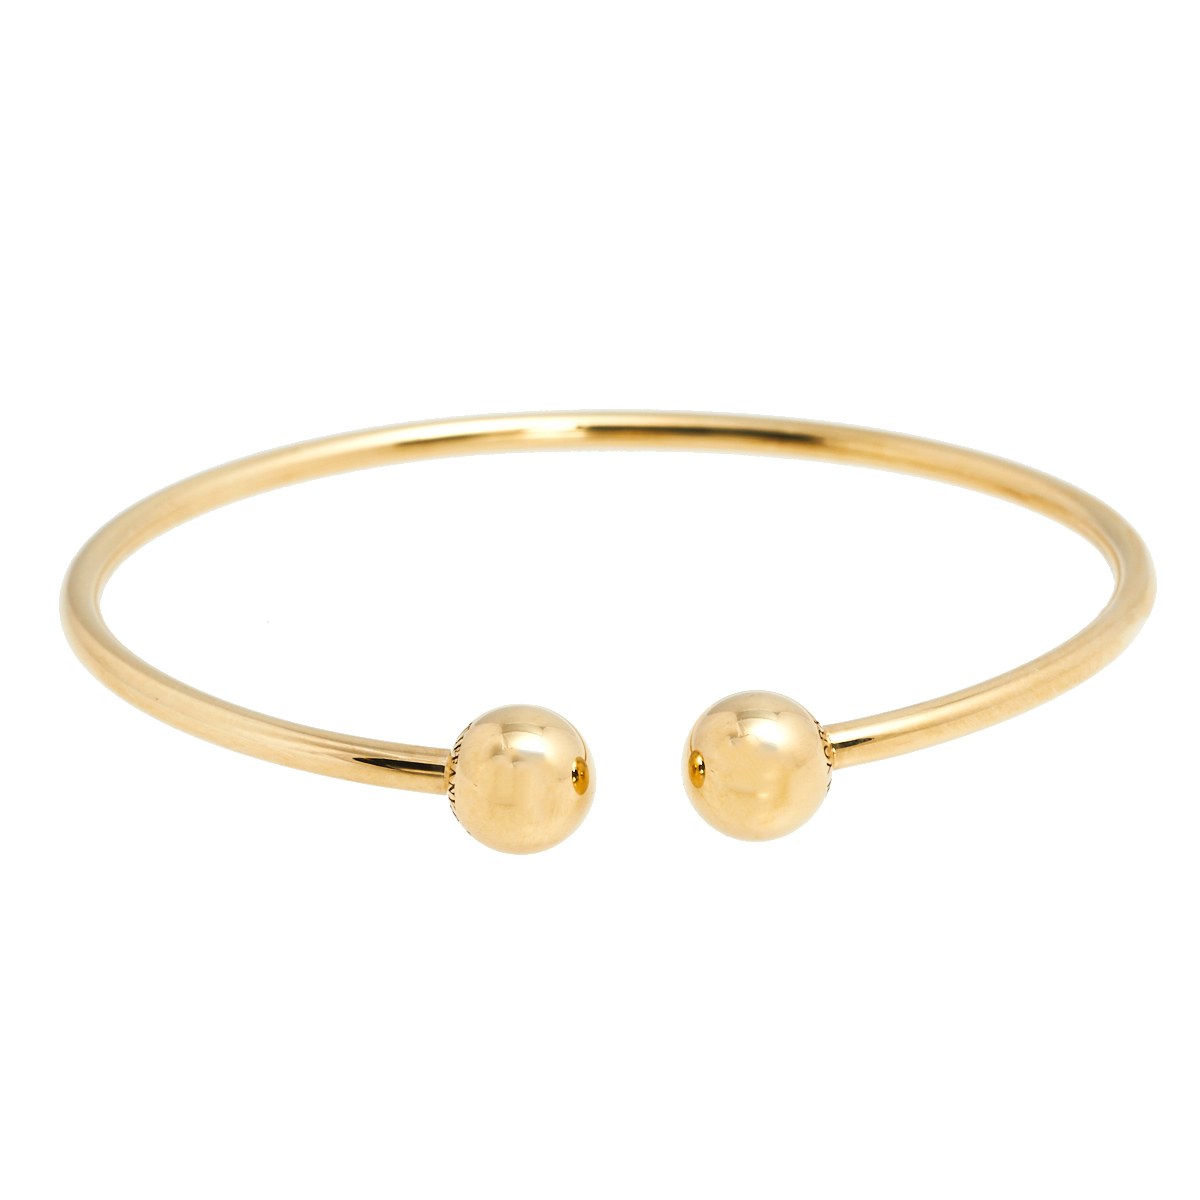 Tiffany & Co. HardWear Ball Wire 18K Yellow Gold Open Cuff Bracelet